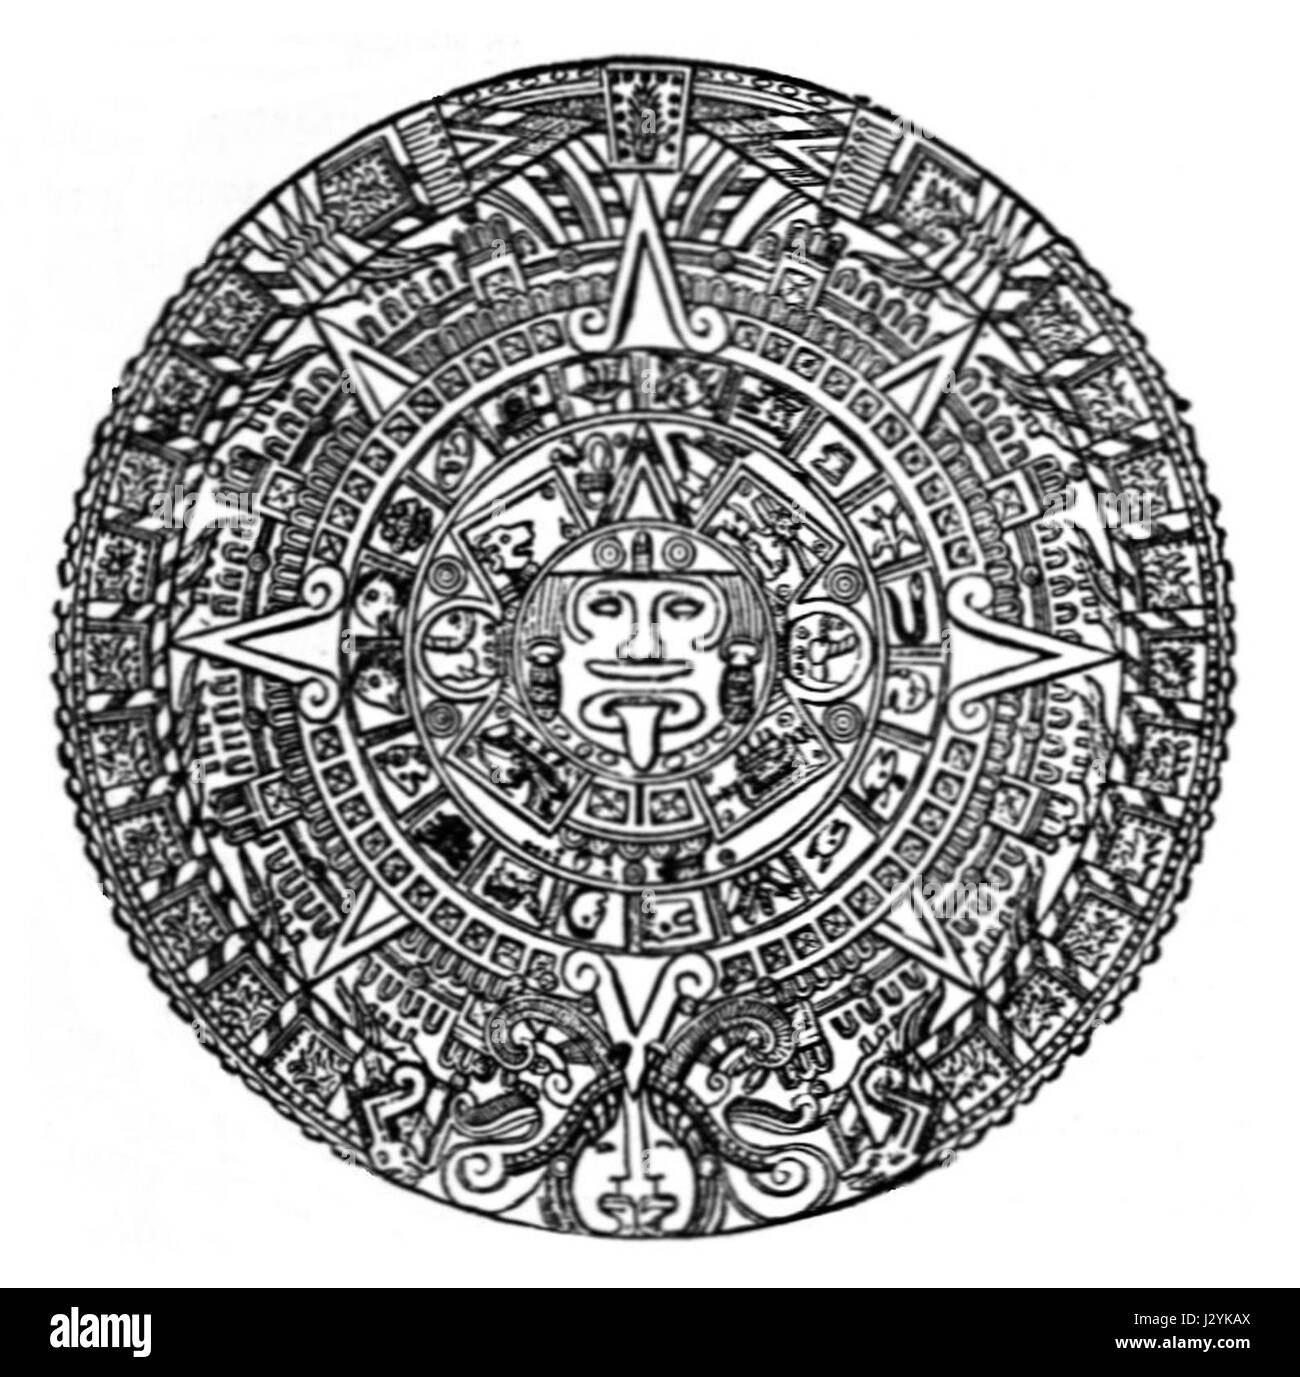 Календарь майя распечатать. Камень солнца ацтеков. Календарь ацтеков камень солнца амулет. Тональпоуалли календарь ацтеков. Календарь Майя.